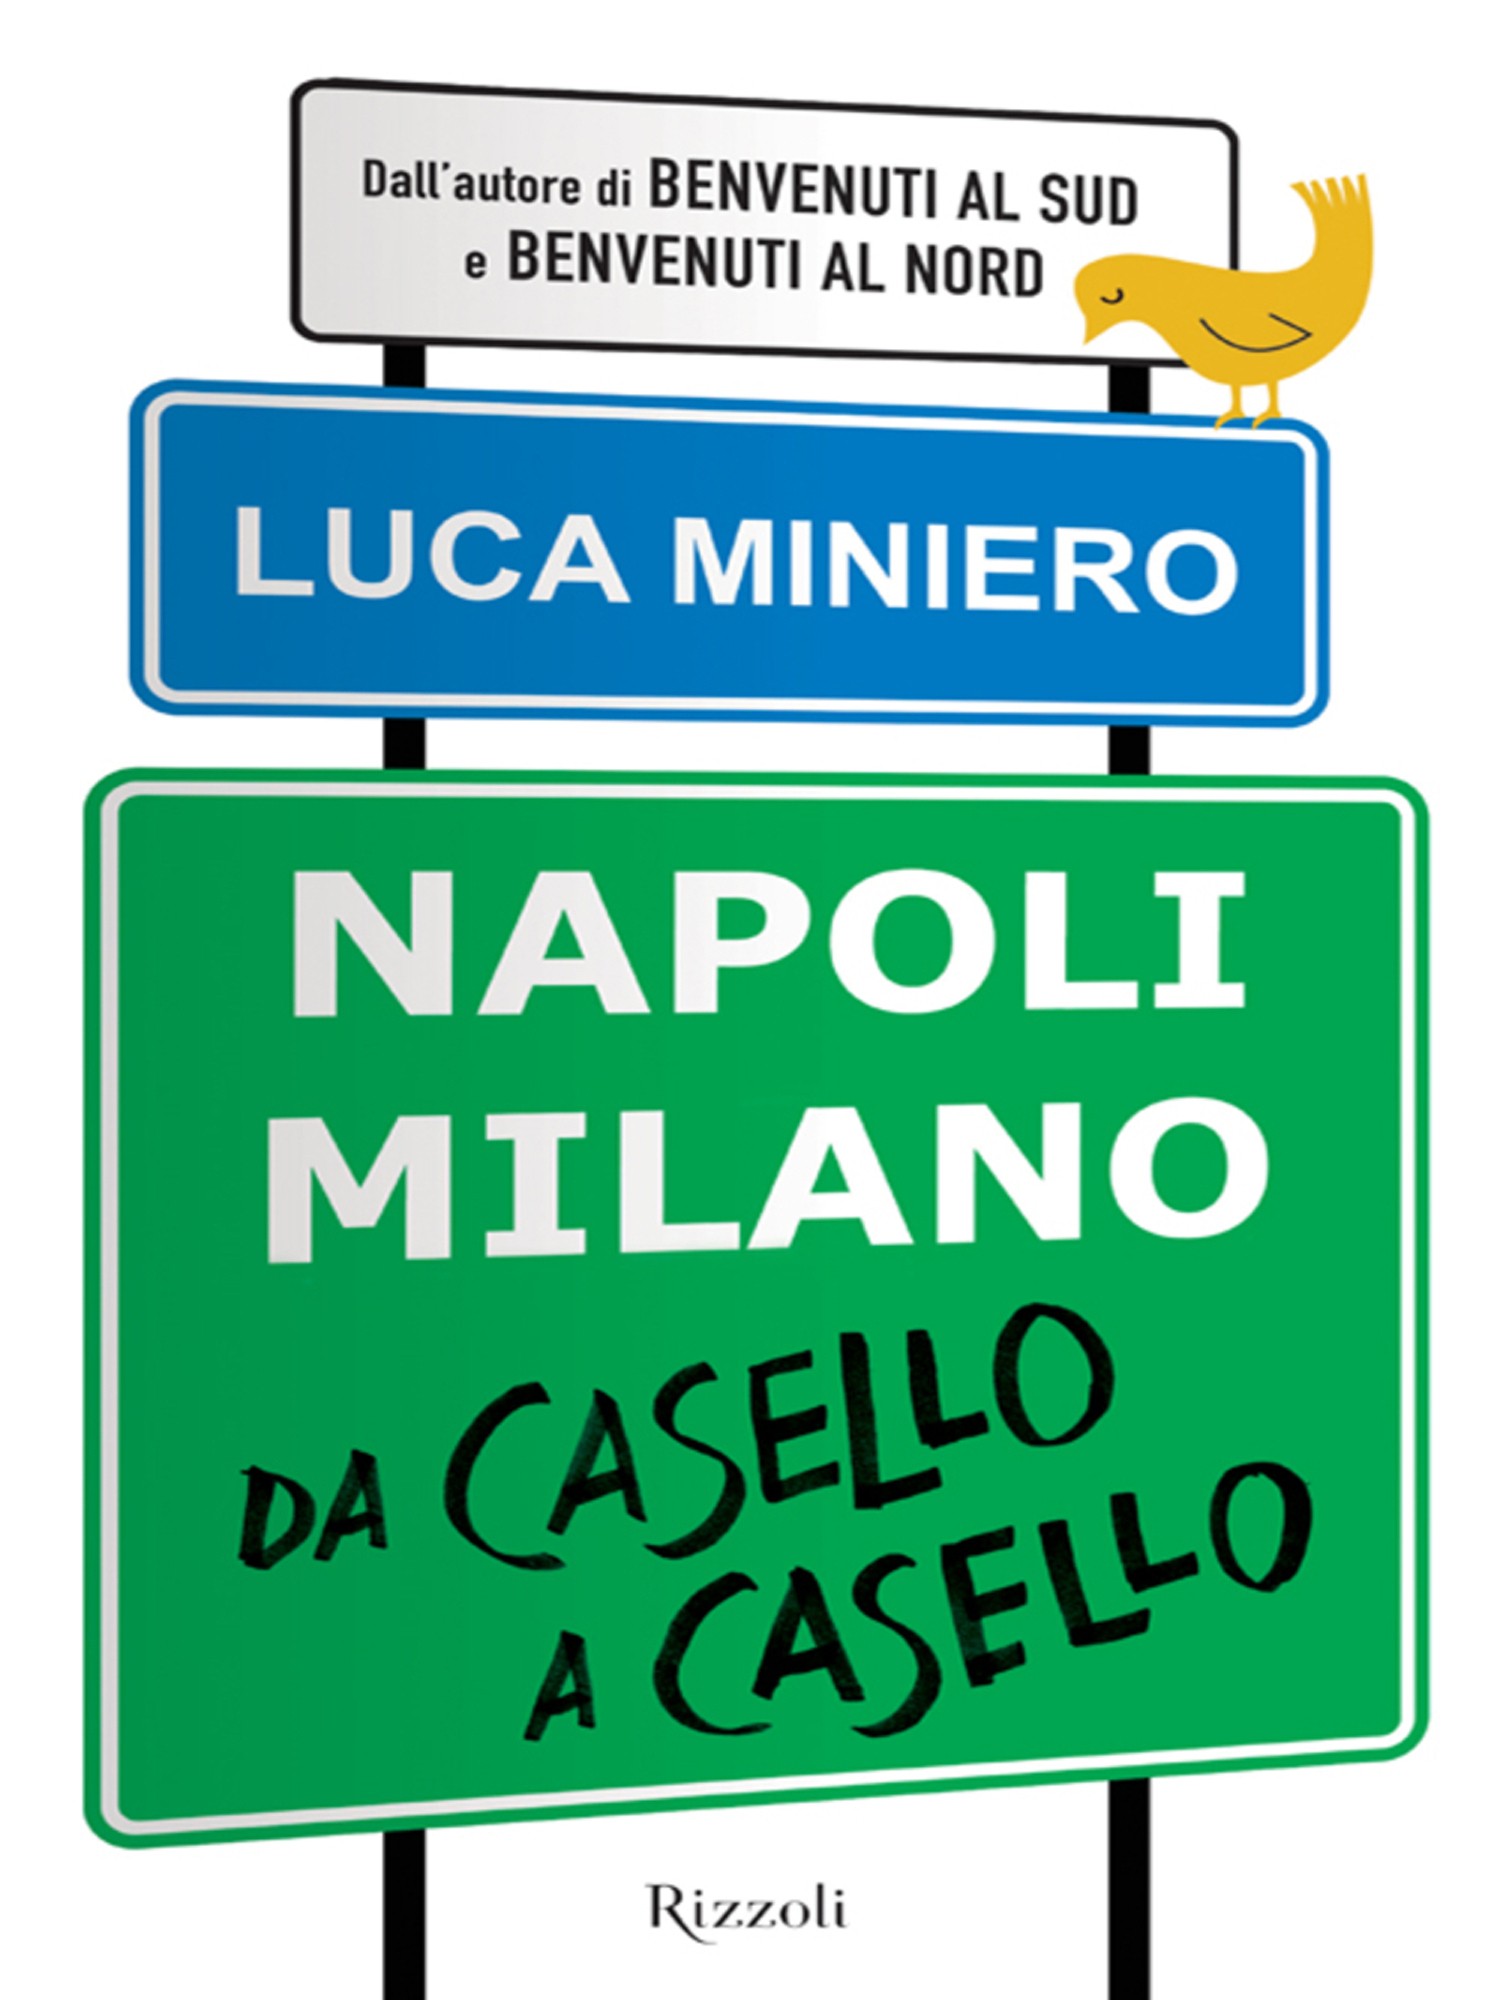 Napoli Milano da casello a casello - Librerie.coop